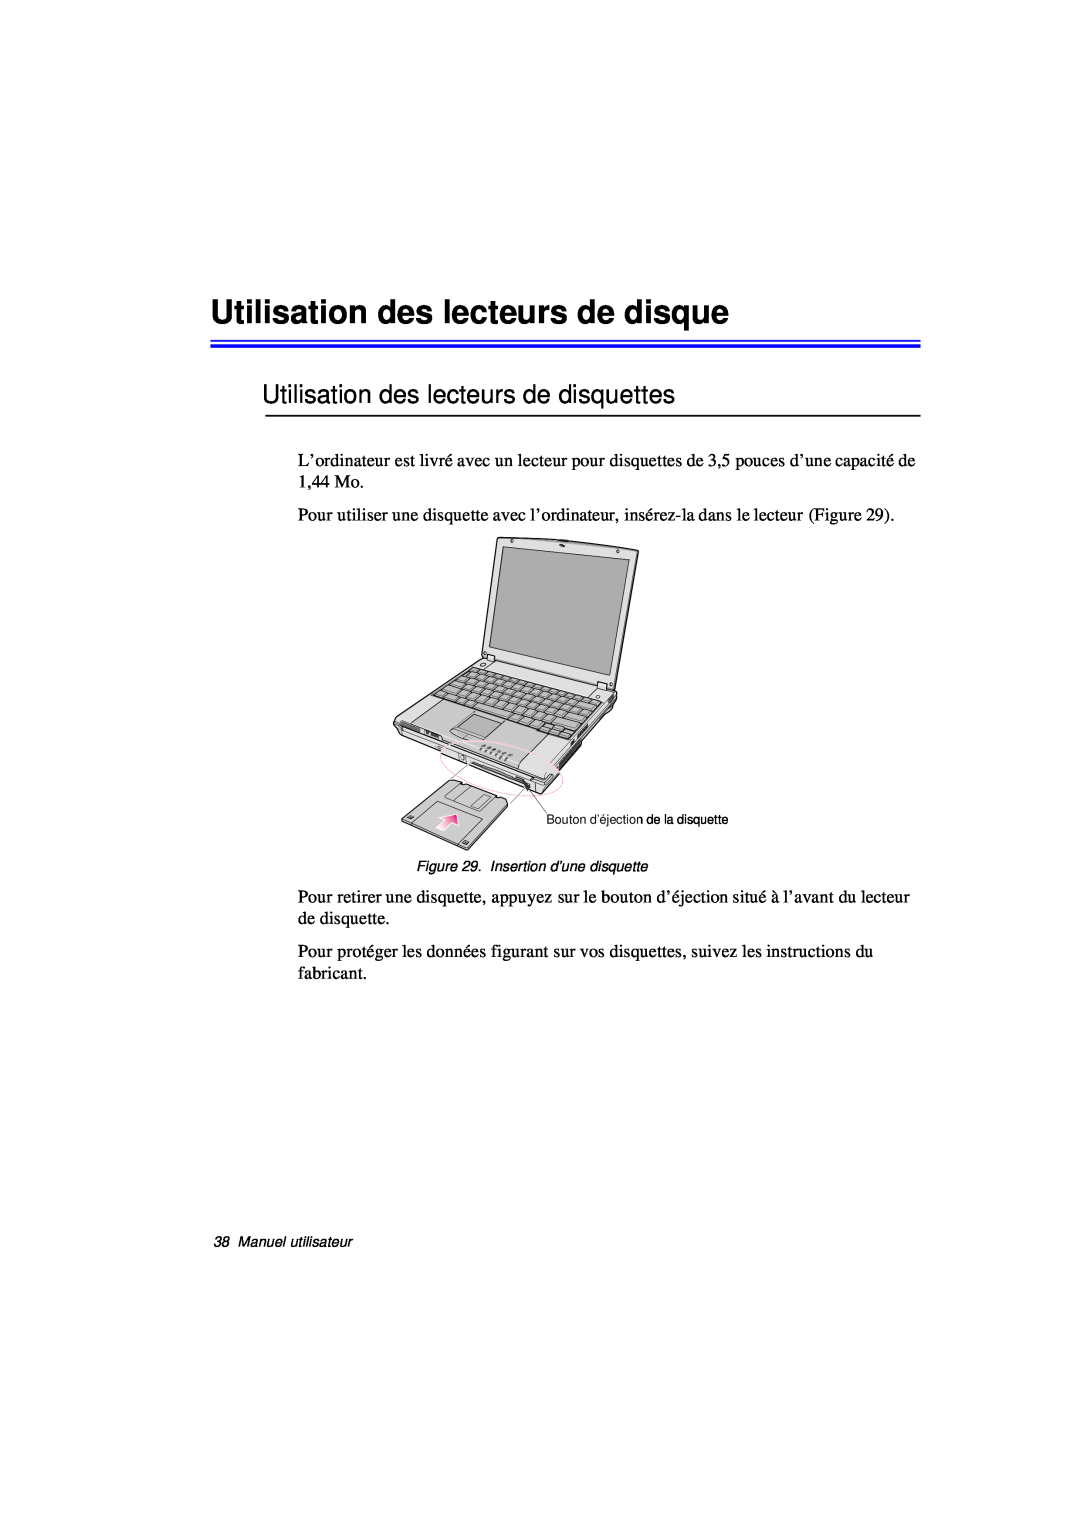 Samsung N760GR2007/SEF, N760PJ2008/SEF, N760PJ2005/SEF, N760GR2Z08/SEF manual Utilisation des lecteurs de disquettes 